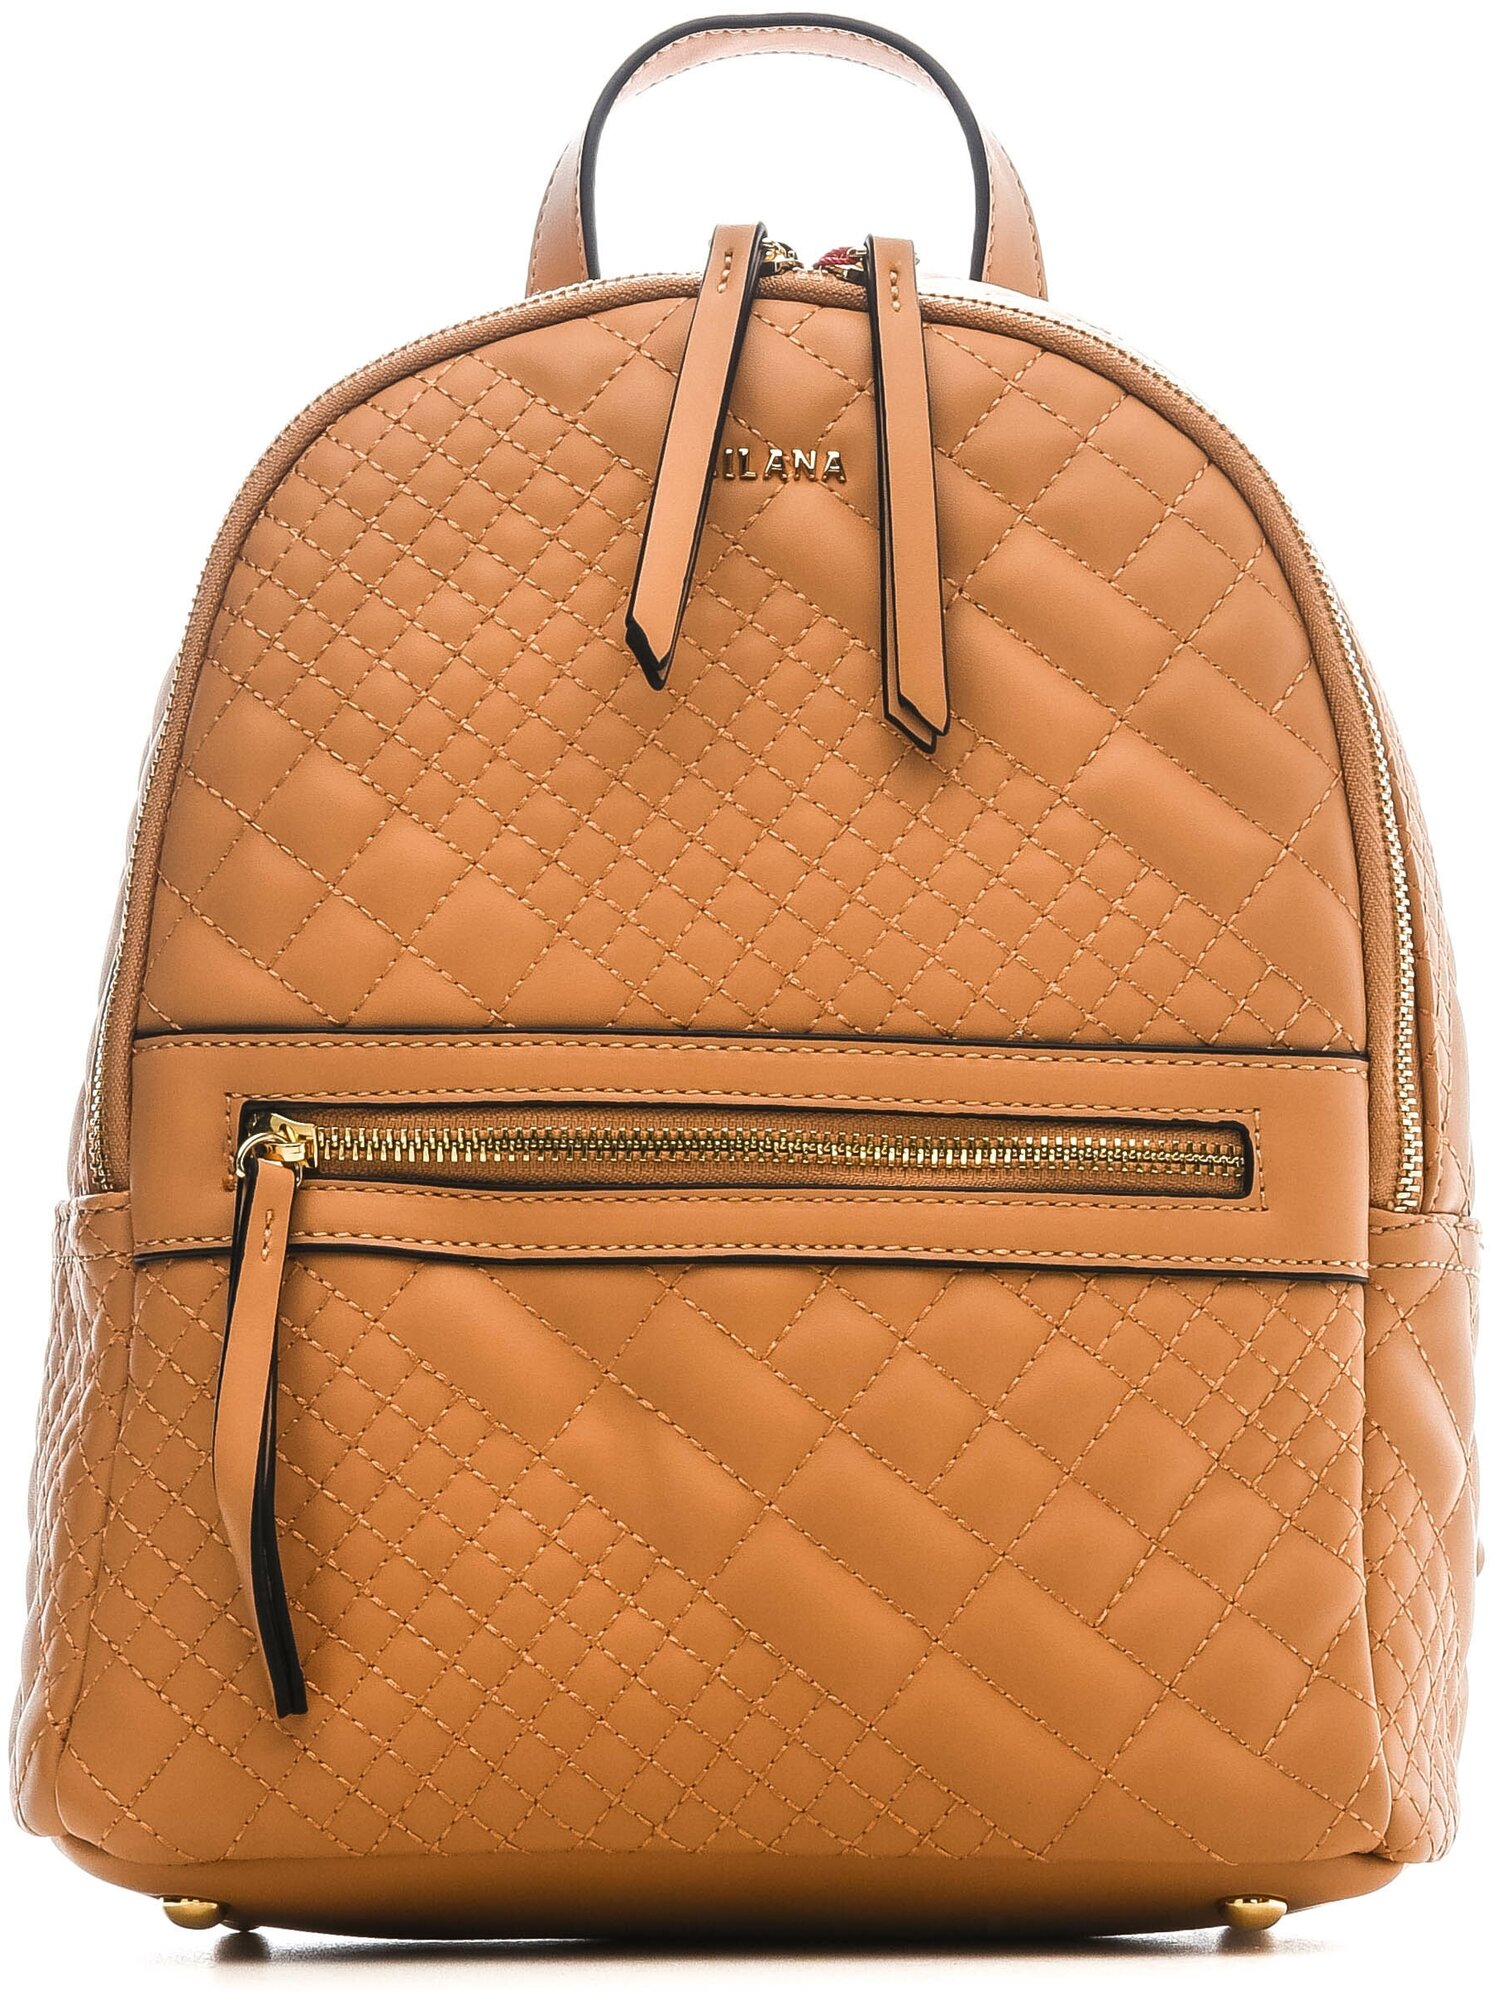 Рюкзак женской всесезонный MILANA 201911-1-120 коричневый 